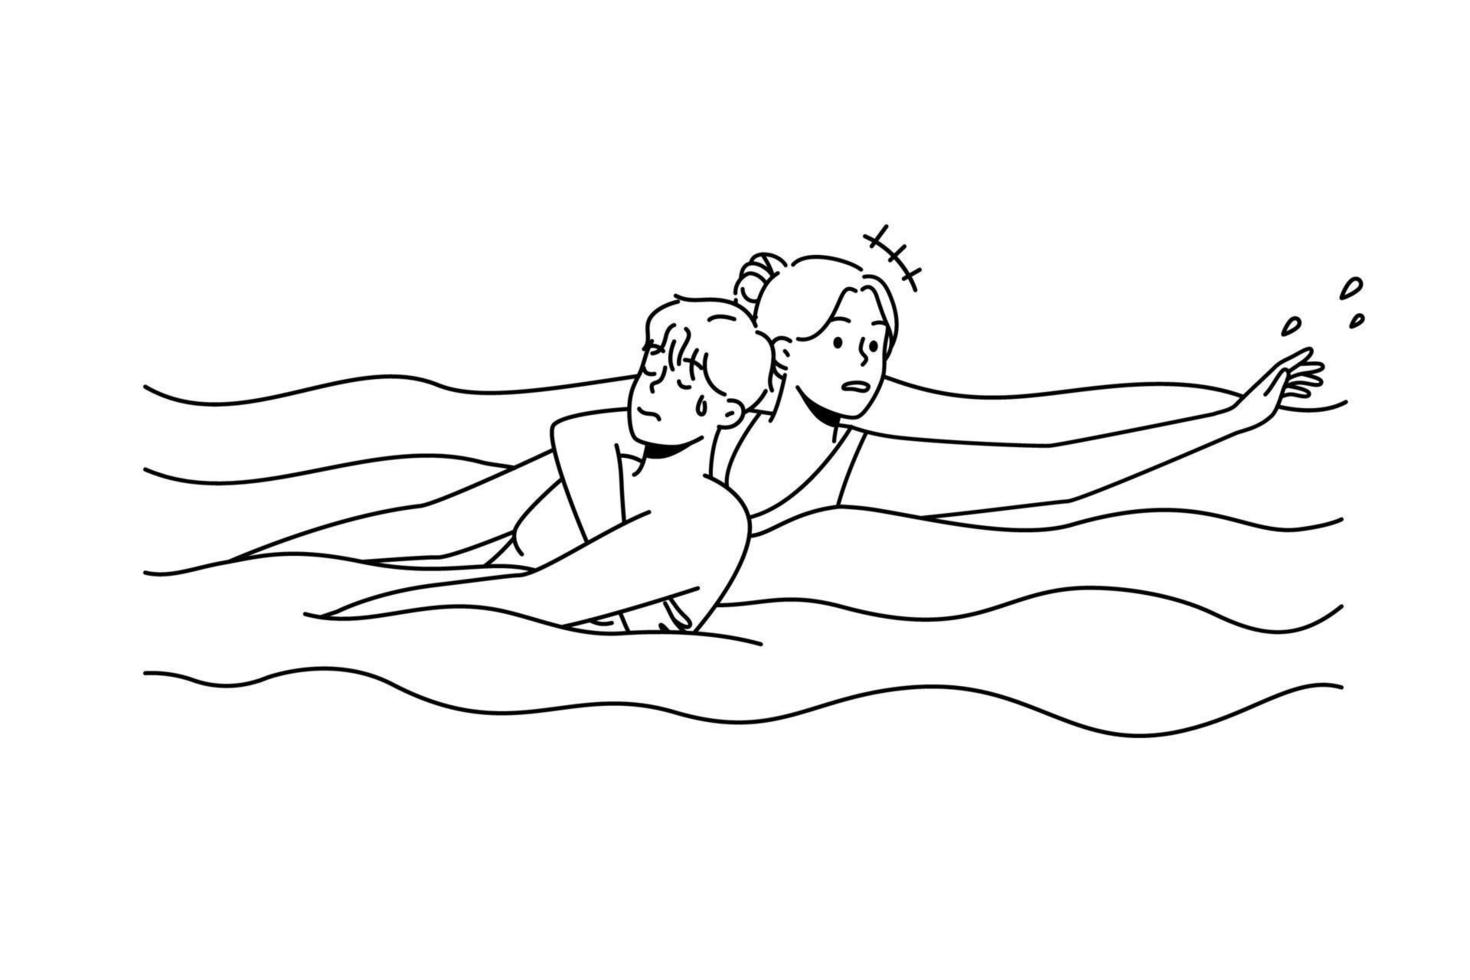 Frau rettet Mann, der im Wasser ertrinkt. rettungsschwimmer helfen kerl, der im schwimmbad untergeht. Notfall und Rettung. Vektor-Illustration. vektor